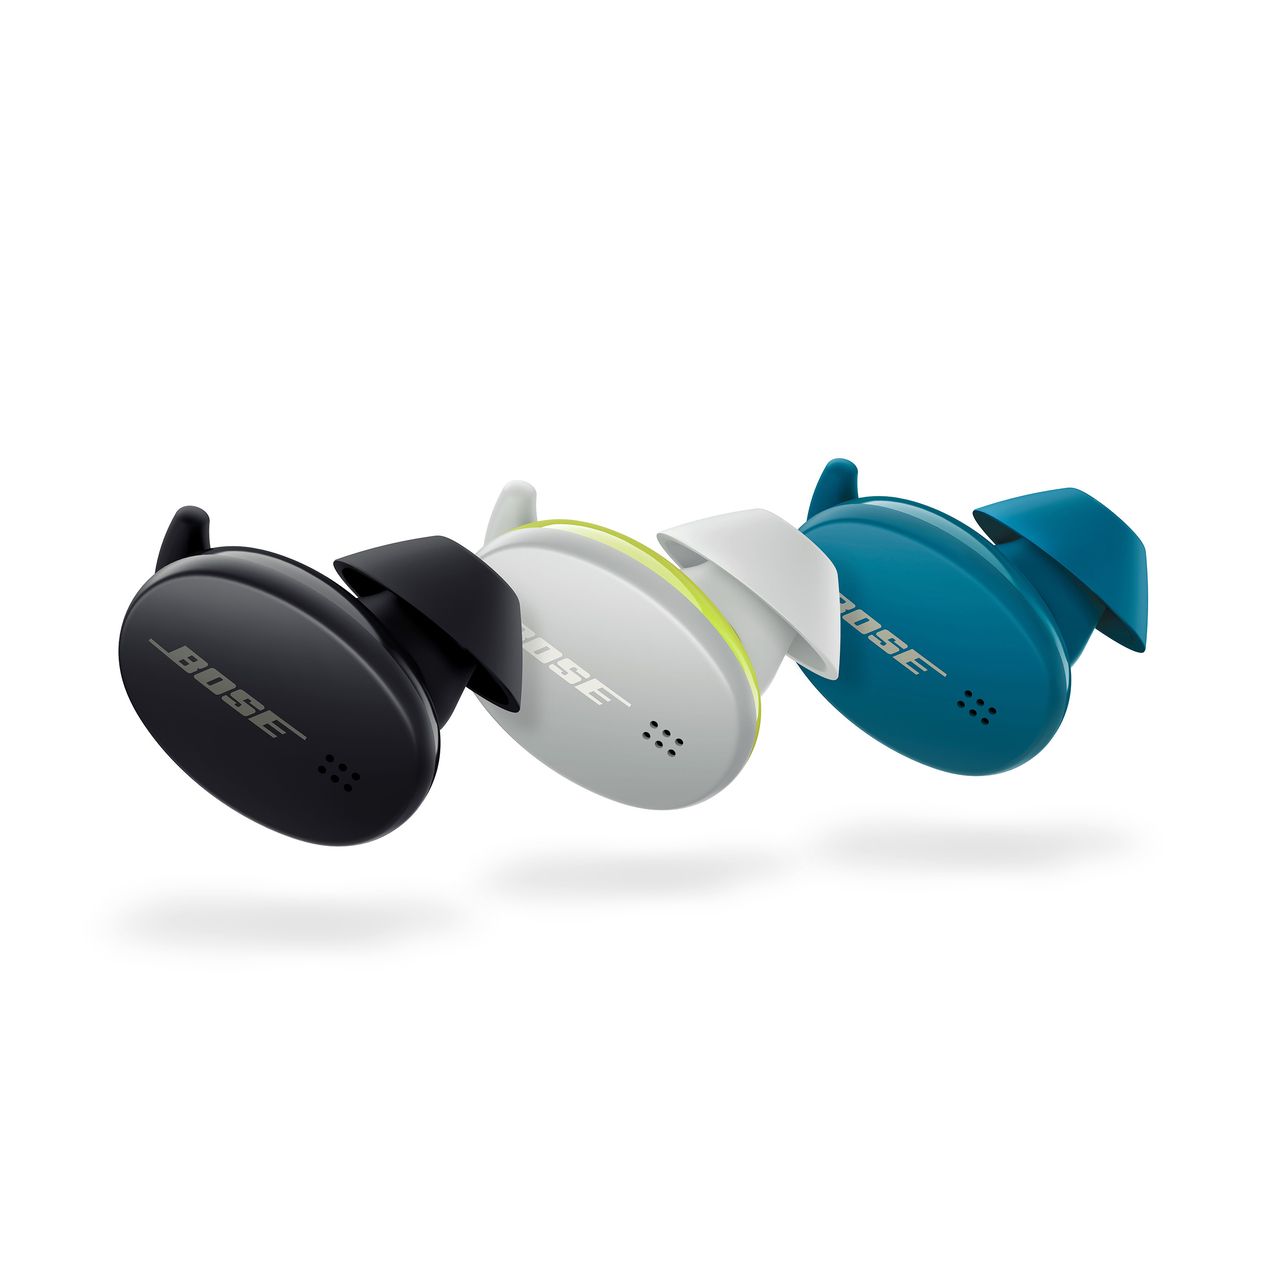 Meilleur casque Bluetooth sans fil sport : comparatif & avis - Dole AC